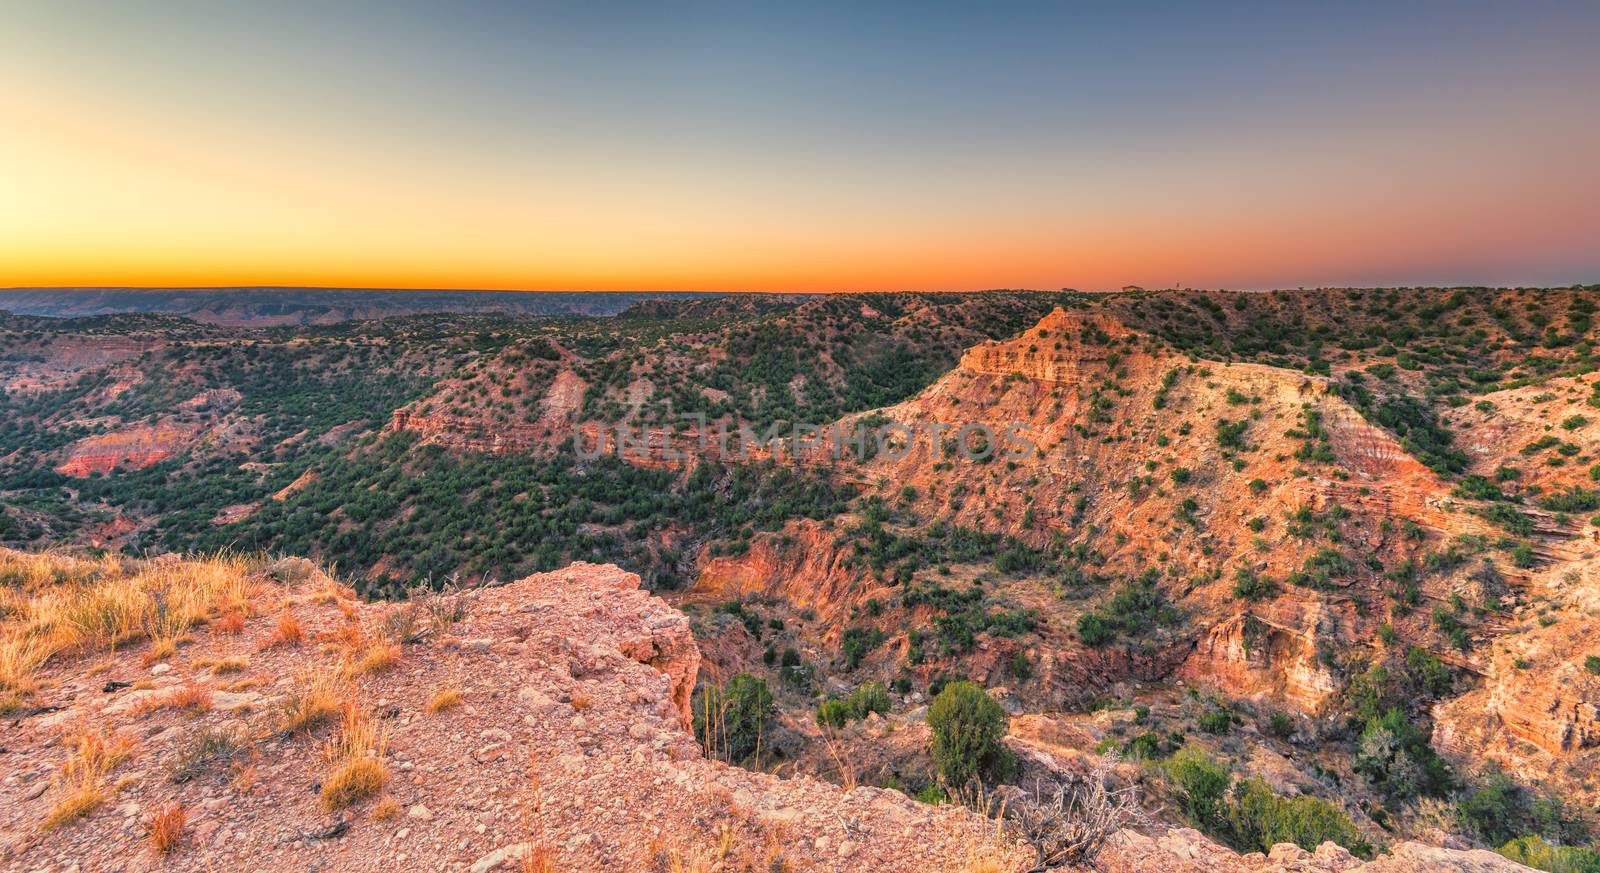 Sunrise at Palo Duro Canyon, TX by patrickstock